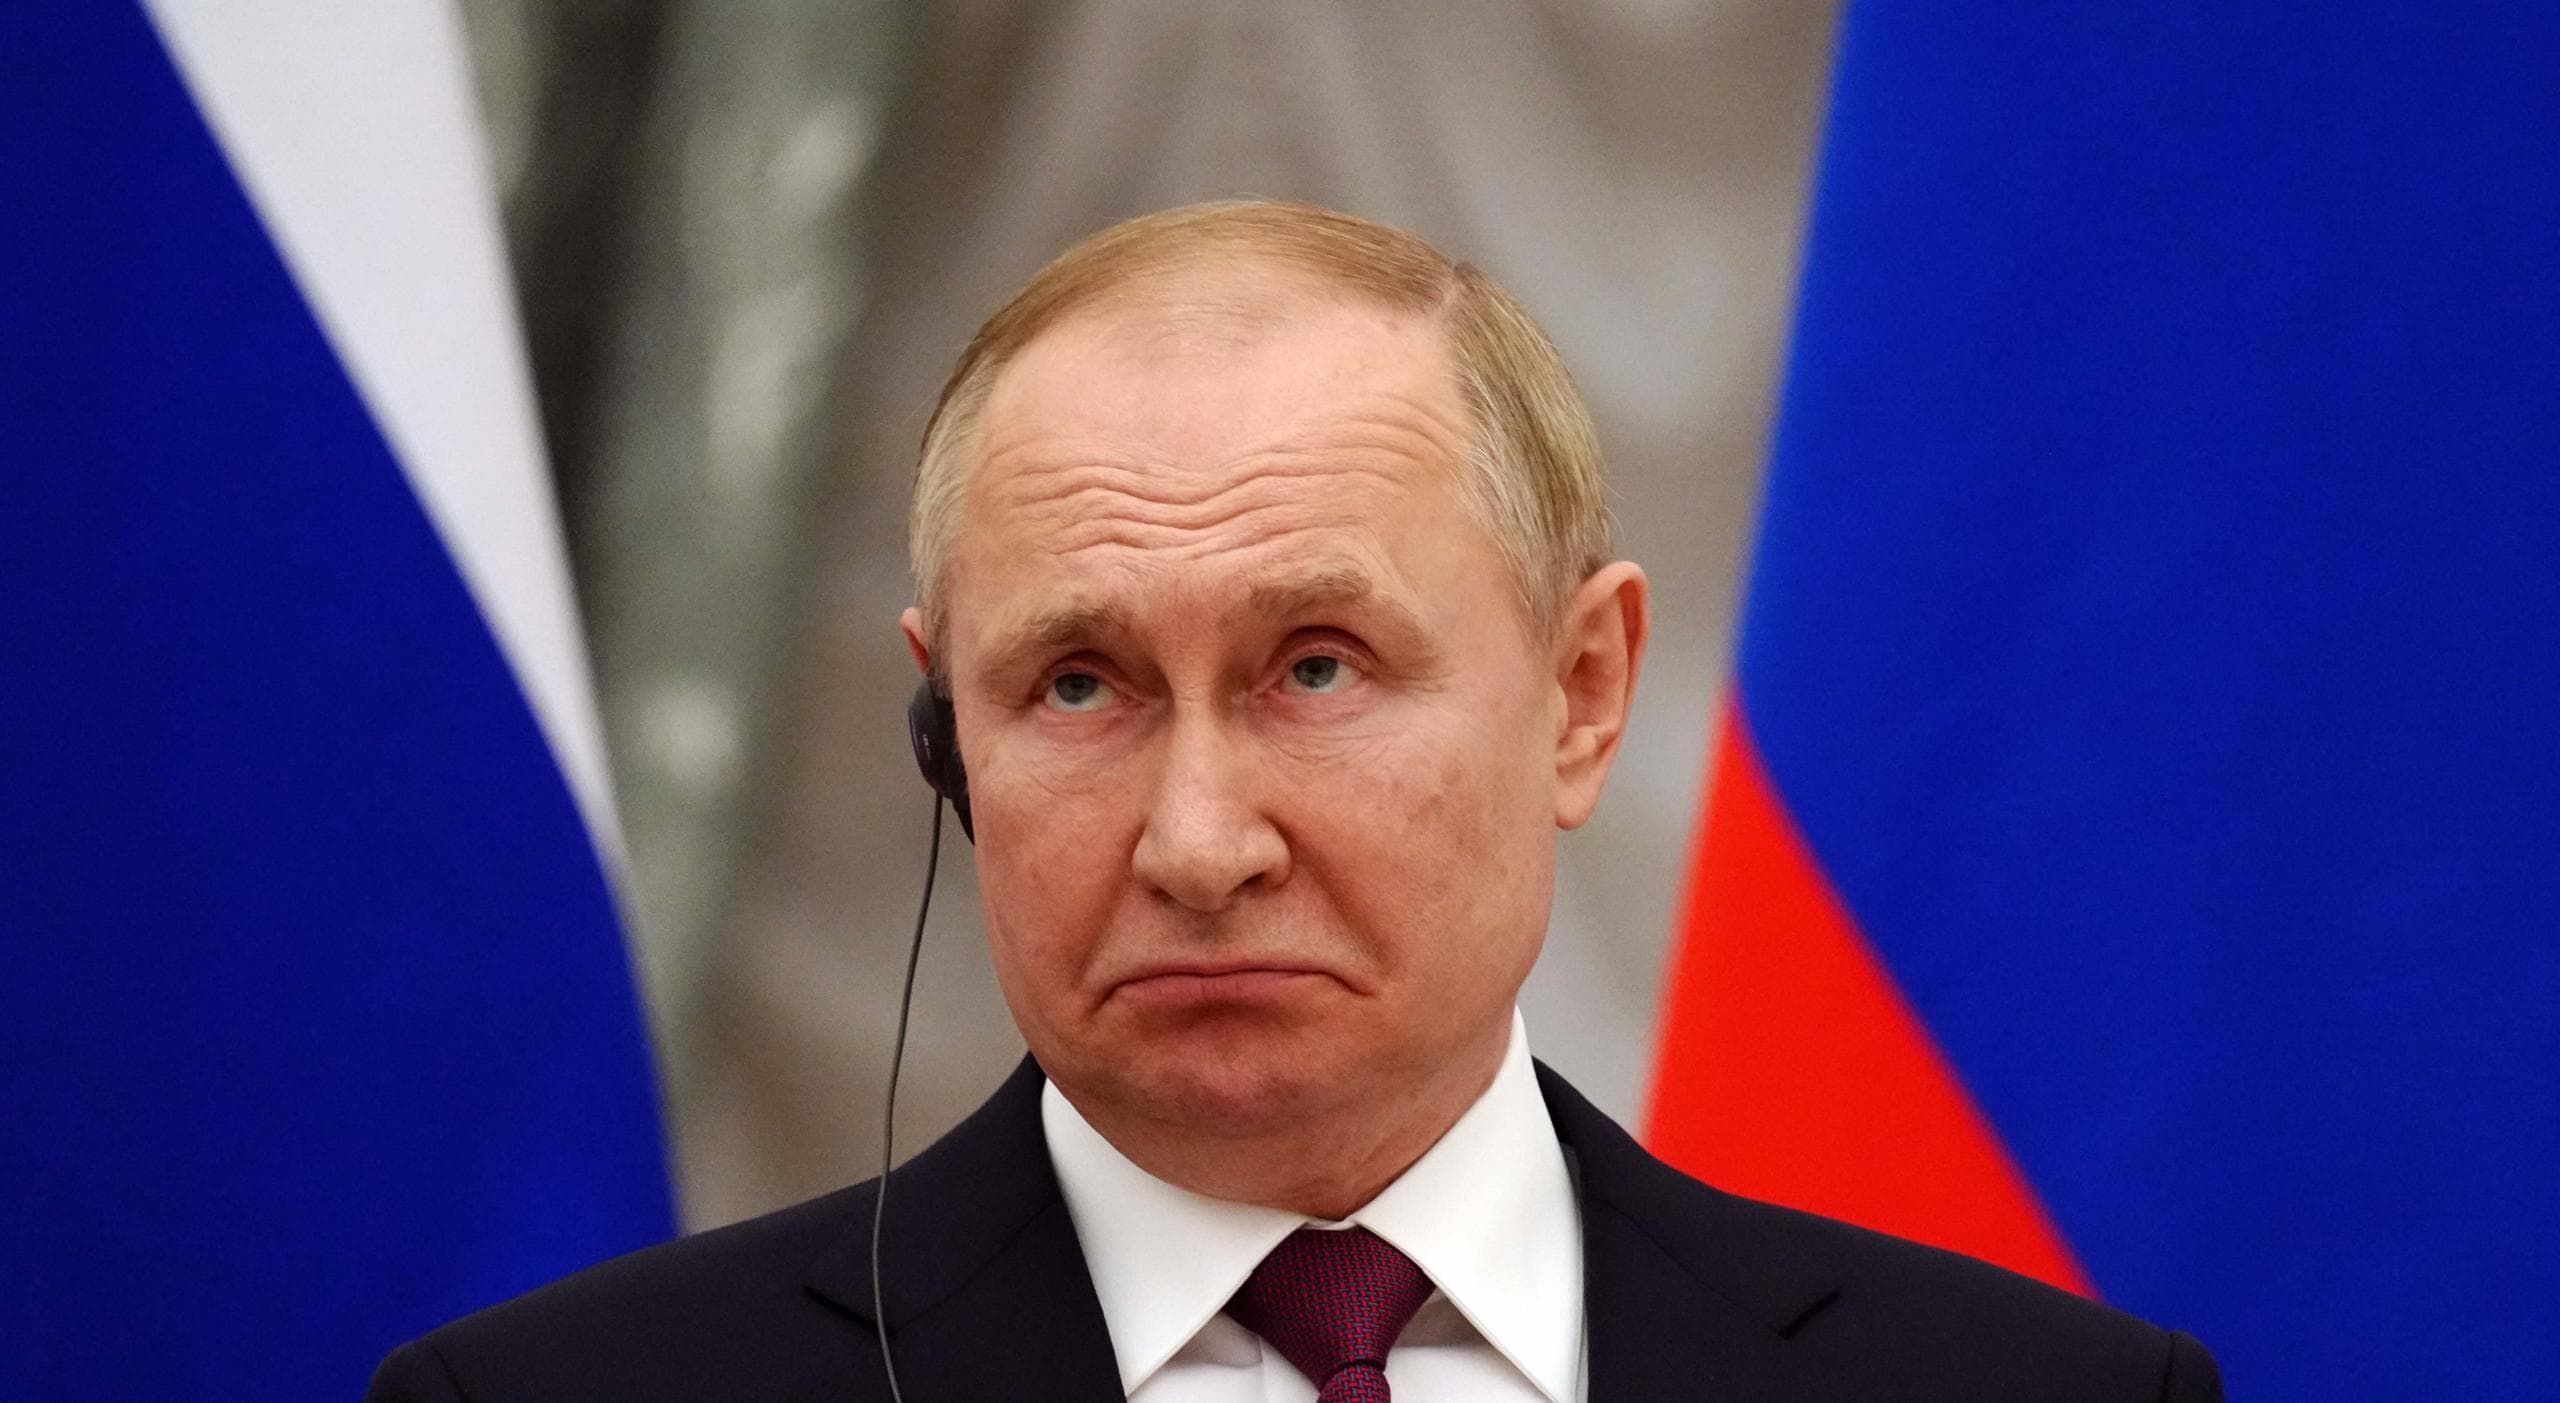 Некоторые вещи указывают на то, что Путин не совсем в уме, – Квин